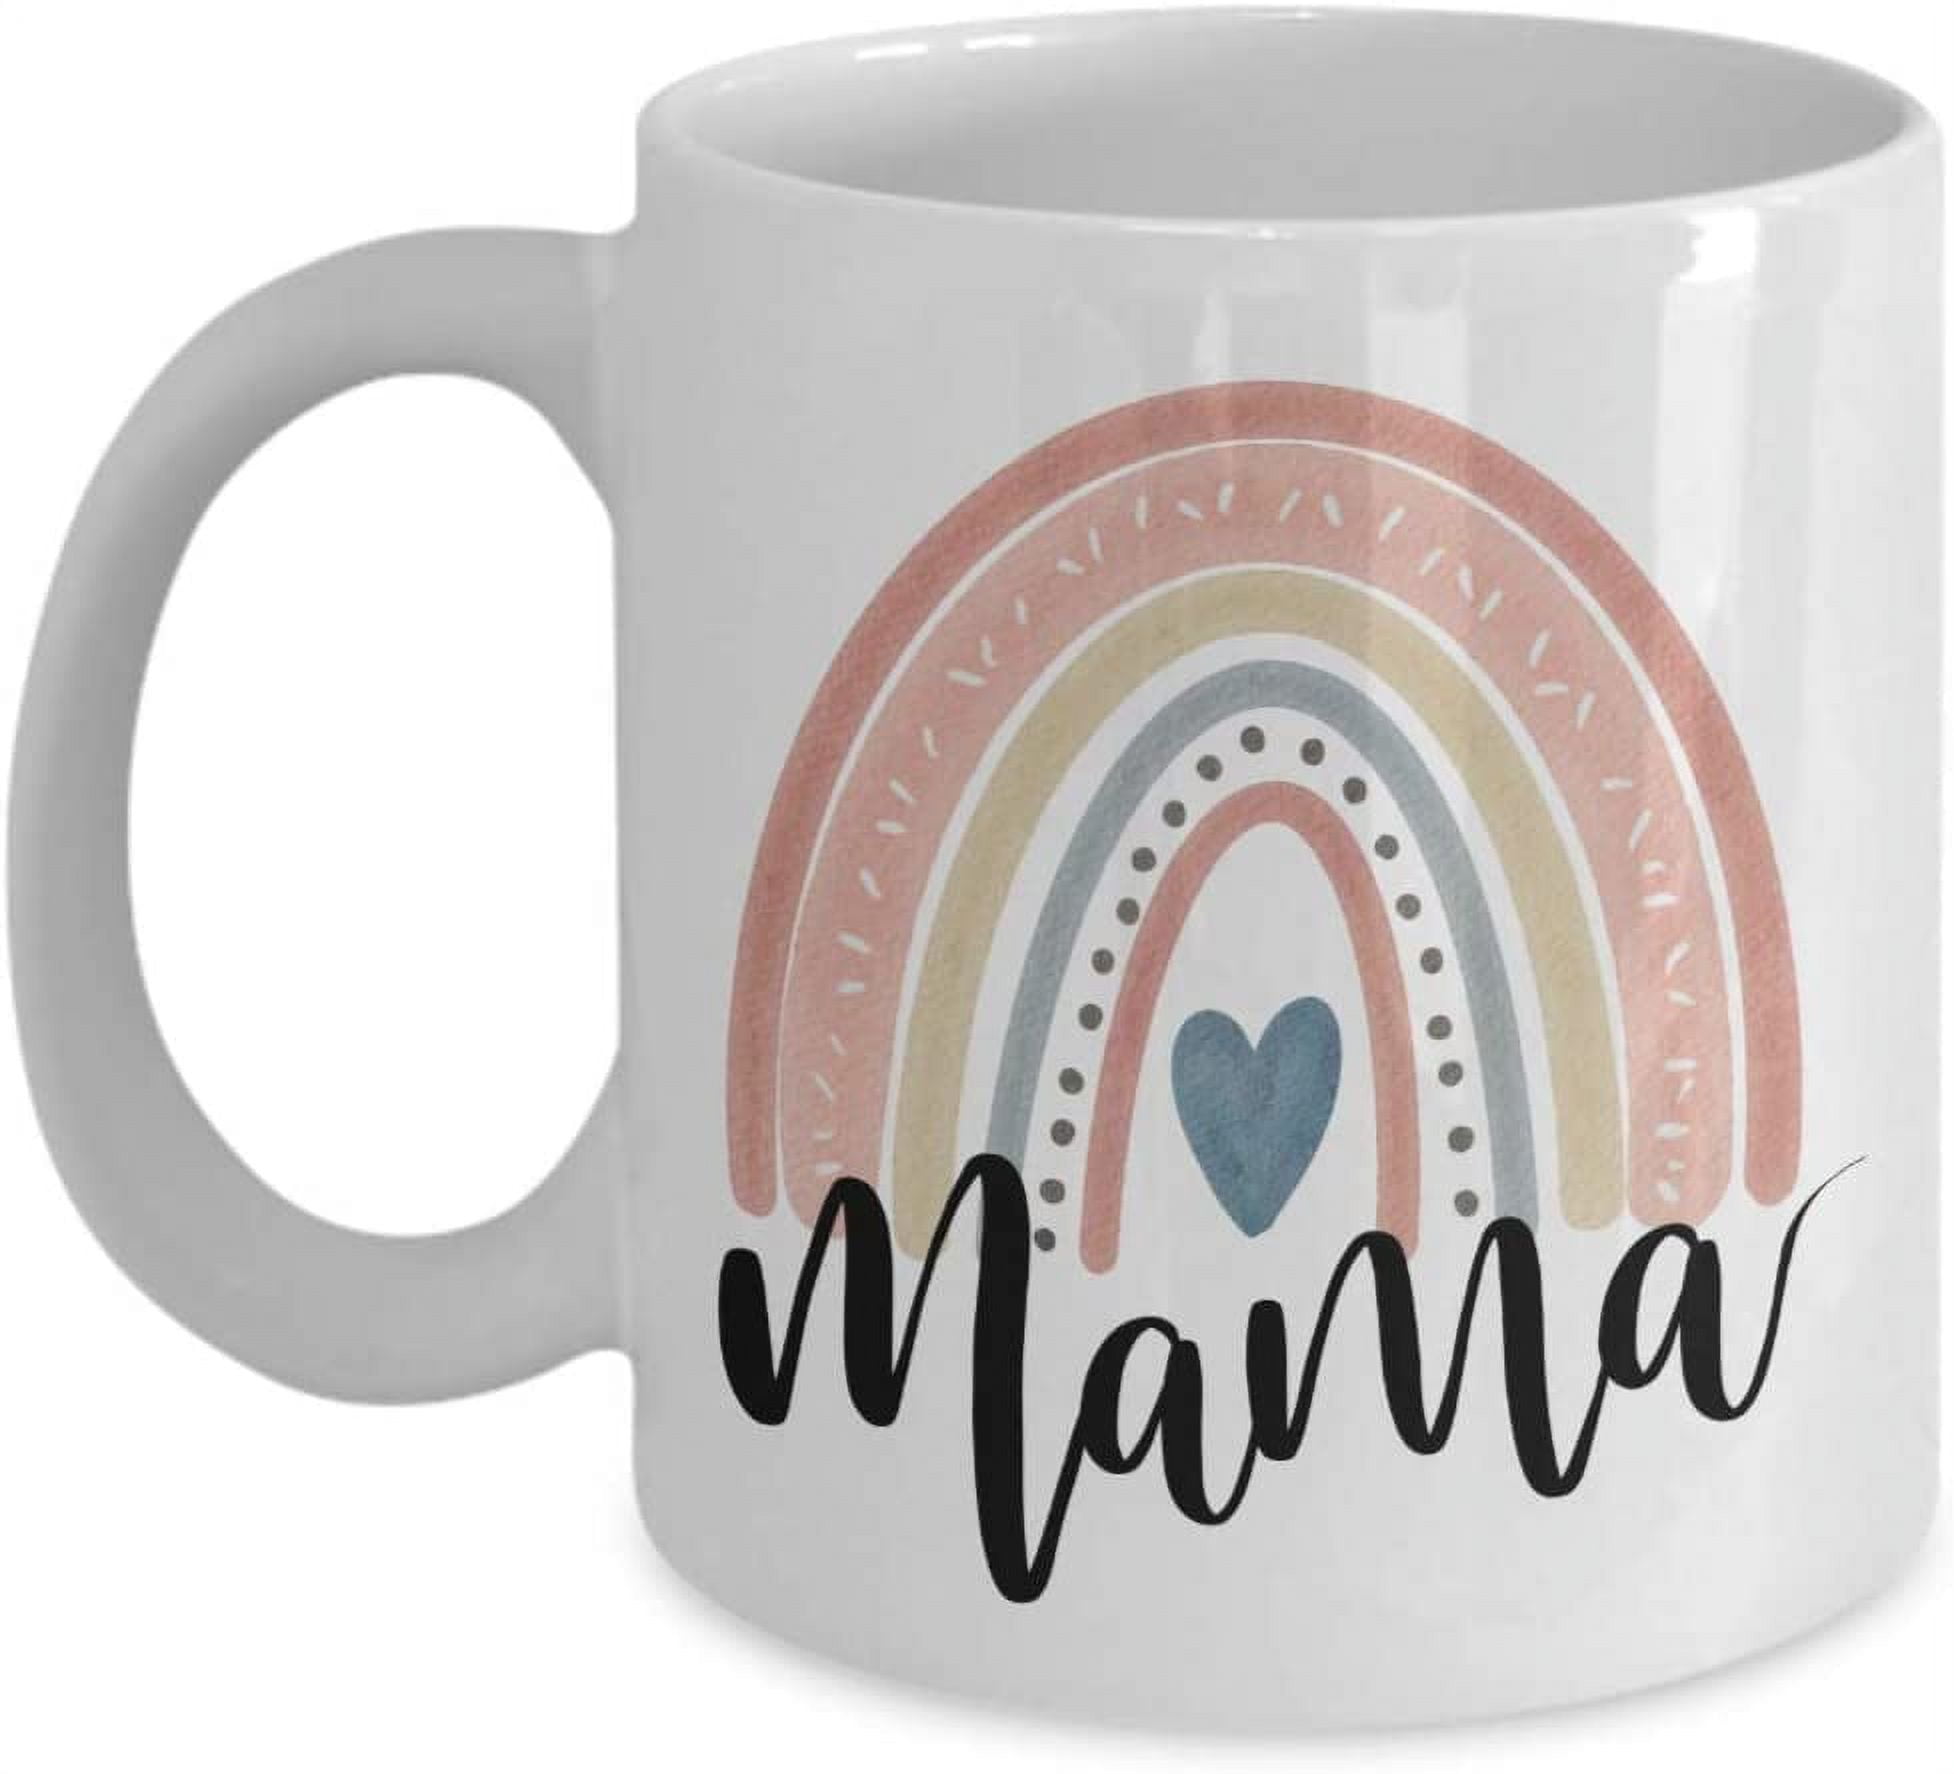 15 oz Rainbow Boy Mom Ceramic Coffee Mug – Emma K Designs